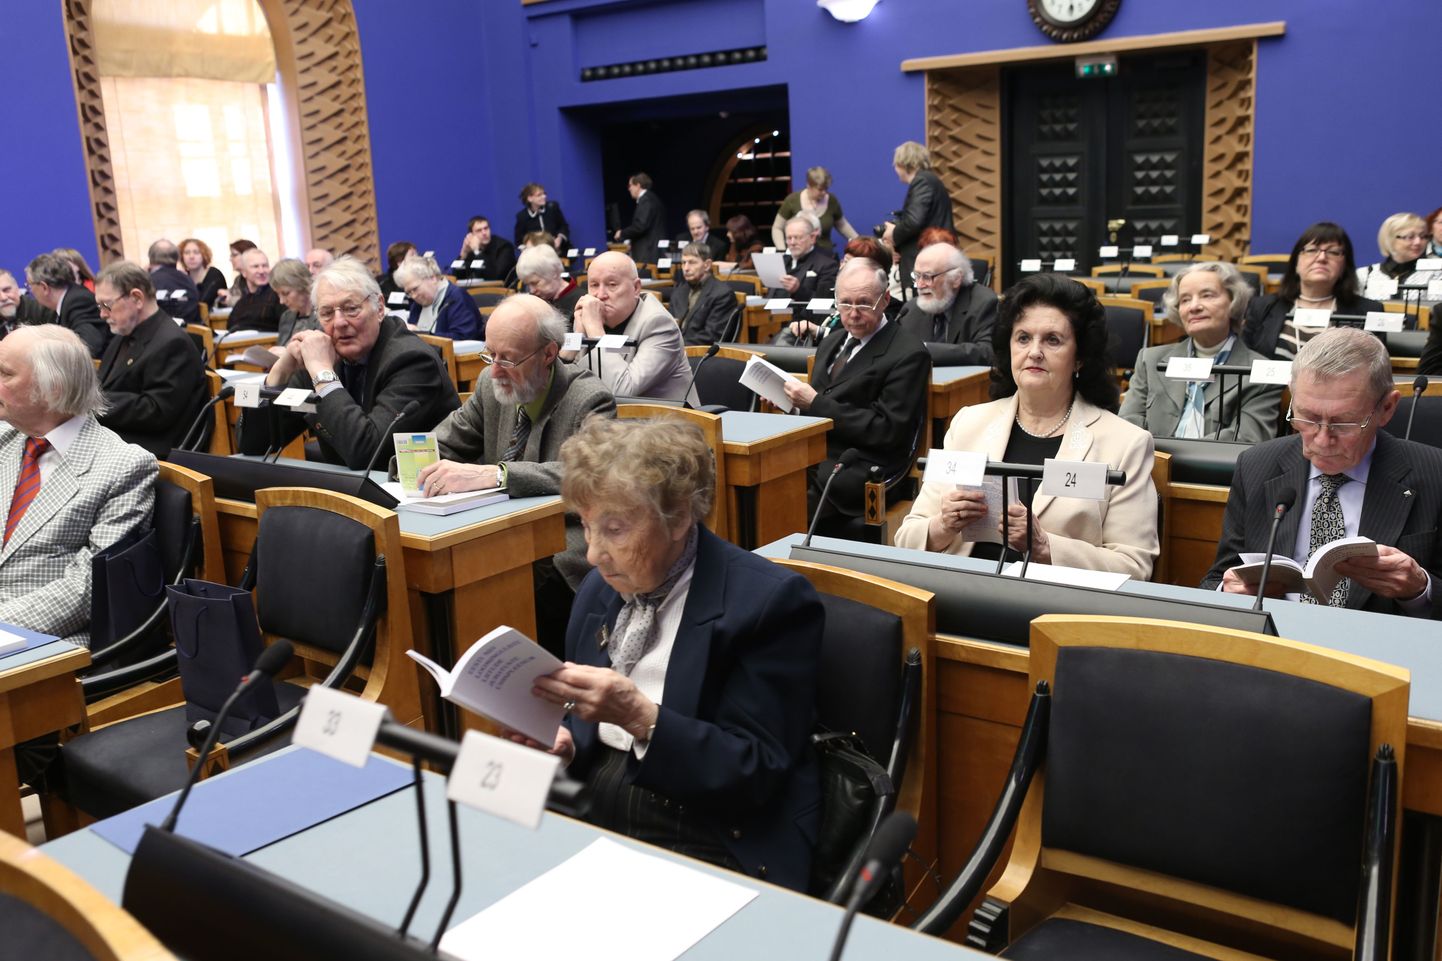 Täna peetakse riigikogus kõnekoosolekut, millega meenutatakse 25 aasta möödumist ajaloolisest loomeliitude pleenumist. Postimees toob lugejateni otsepildi ja sõnavõtud riigikogu saalist.